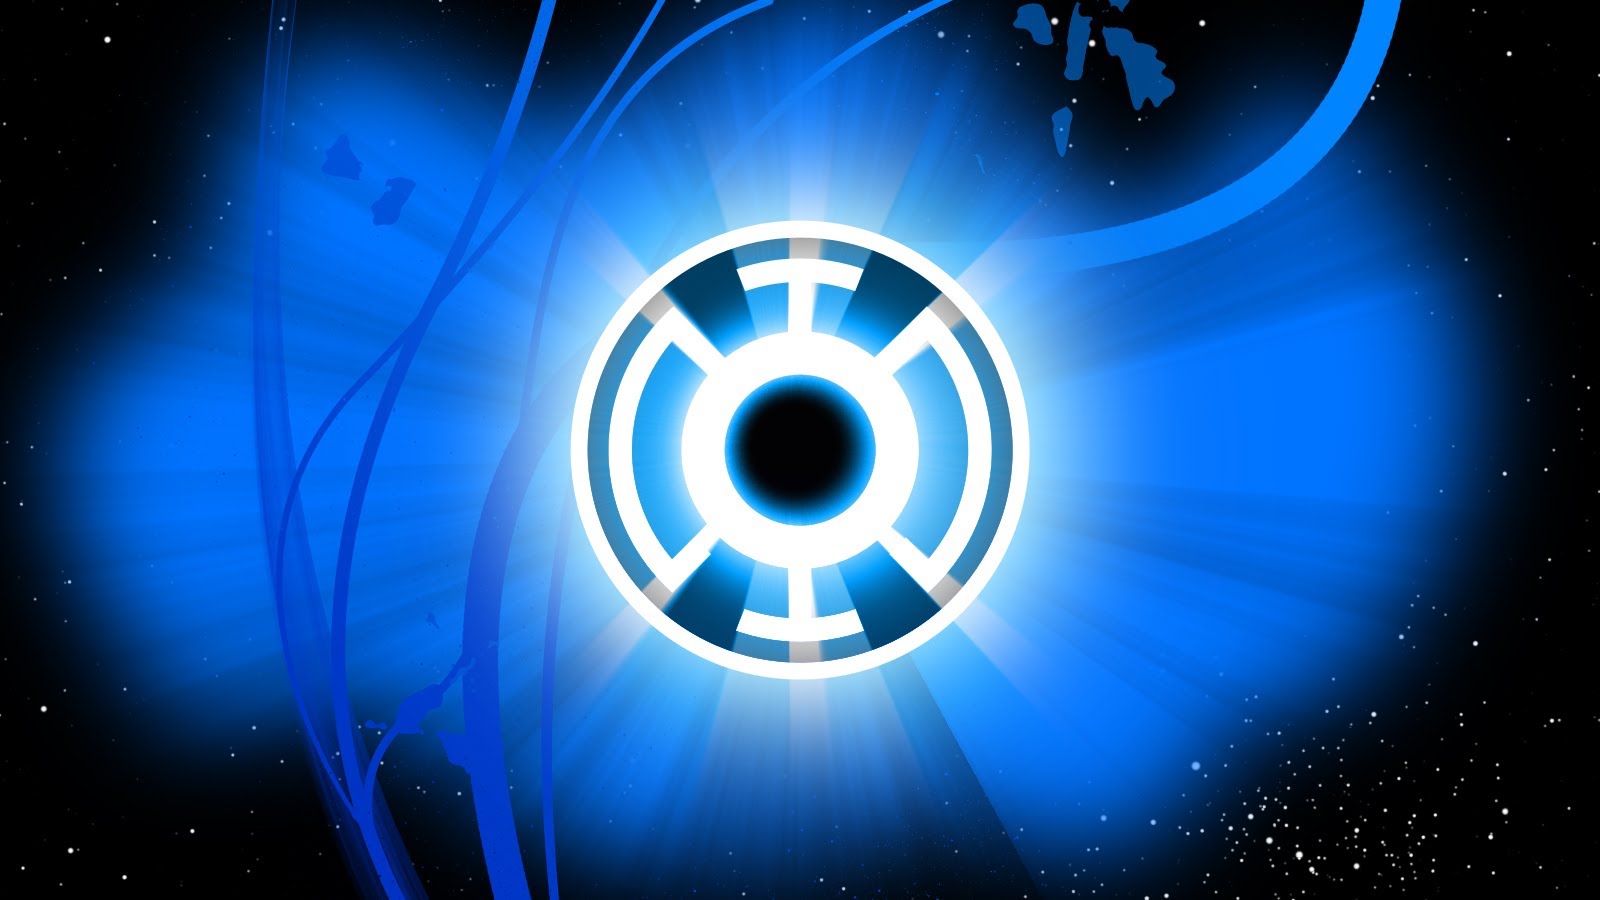 Blue Lantern Corps #2